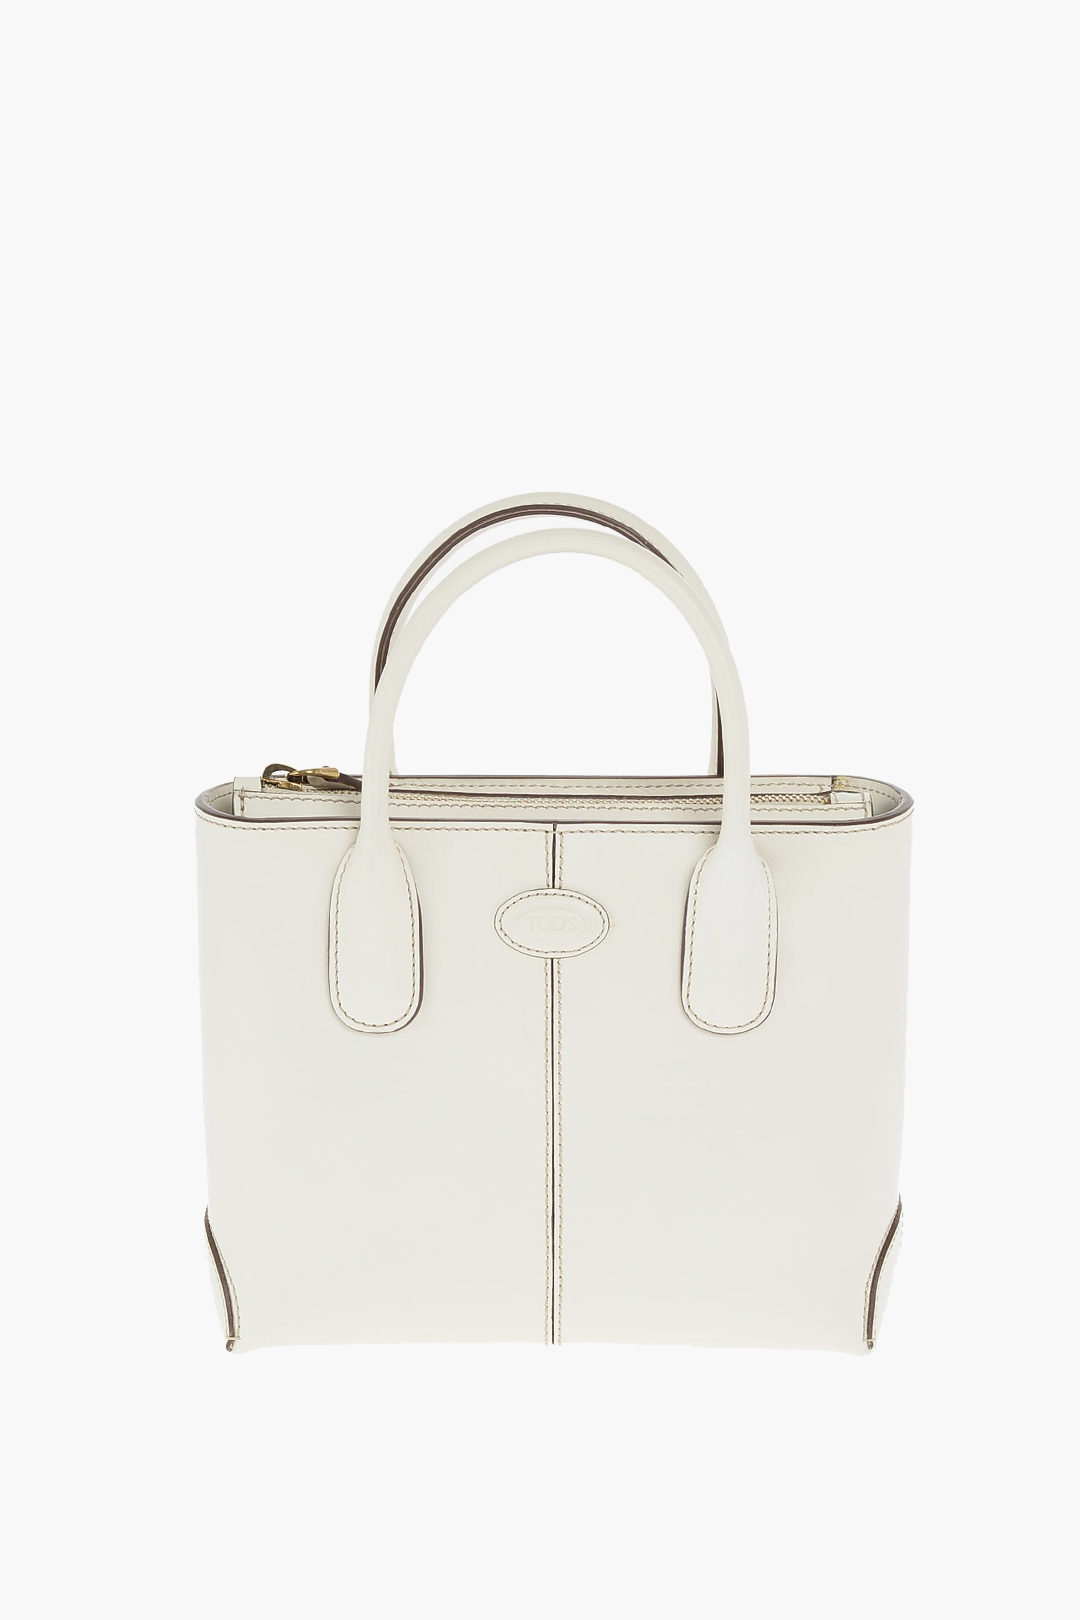 Tod's Leather Handbag with Adjustable Shoulder Strap women - Glamood Outlet